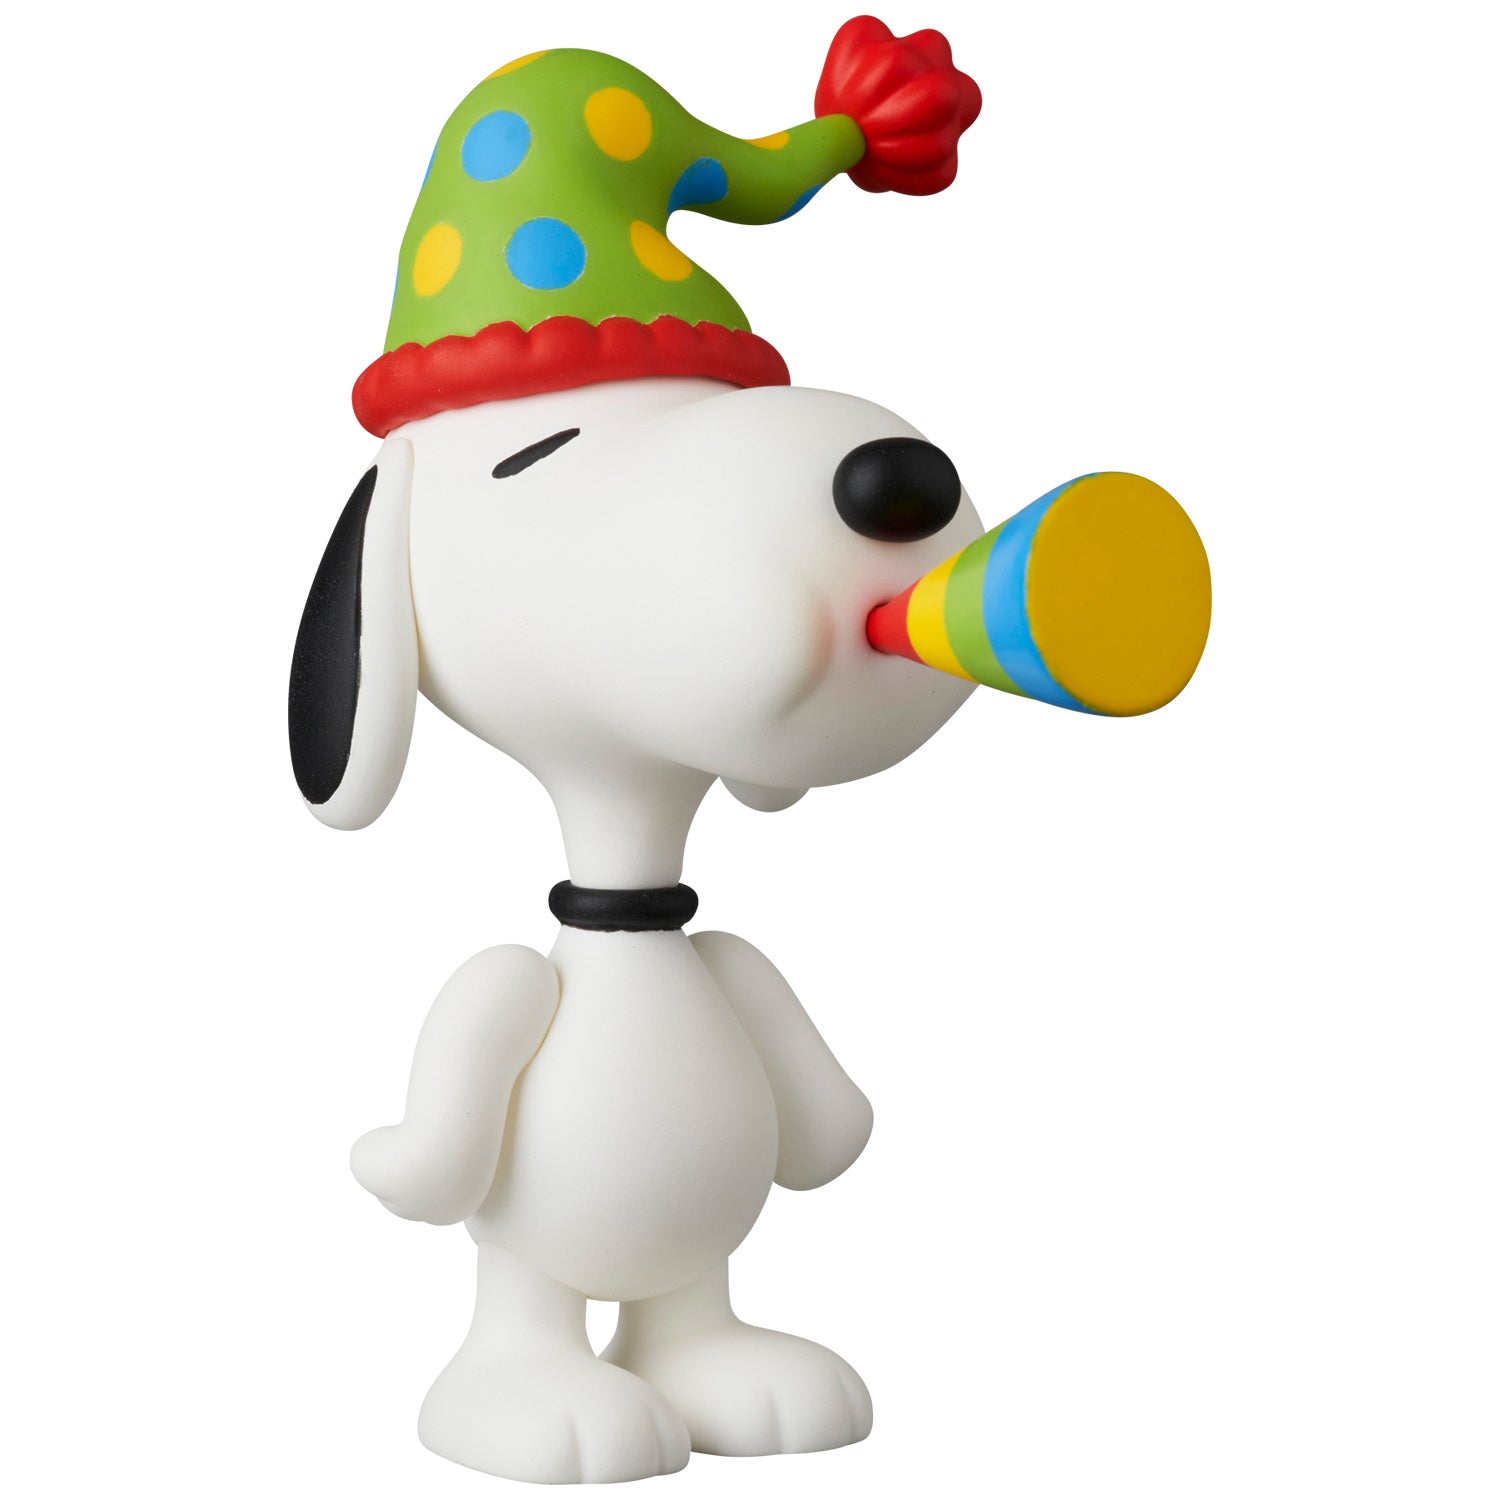 Medicom - UDF 765 - Peanuts Series 16 - Party Snoopy